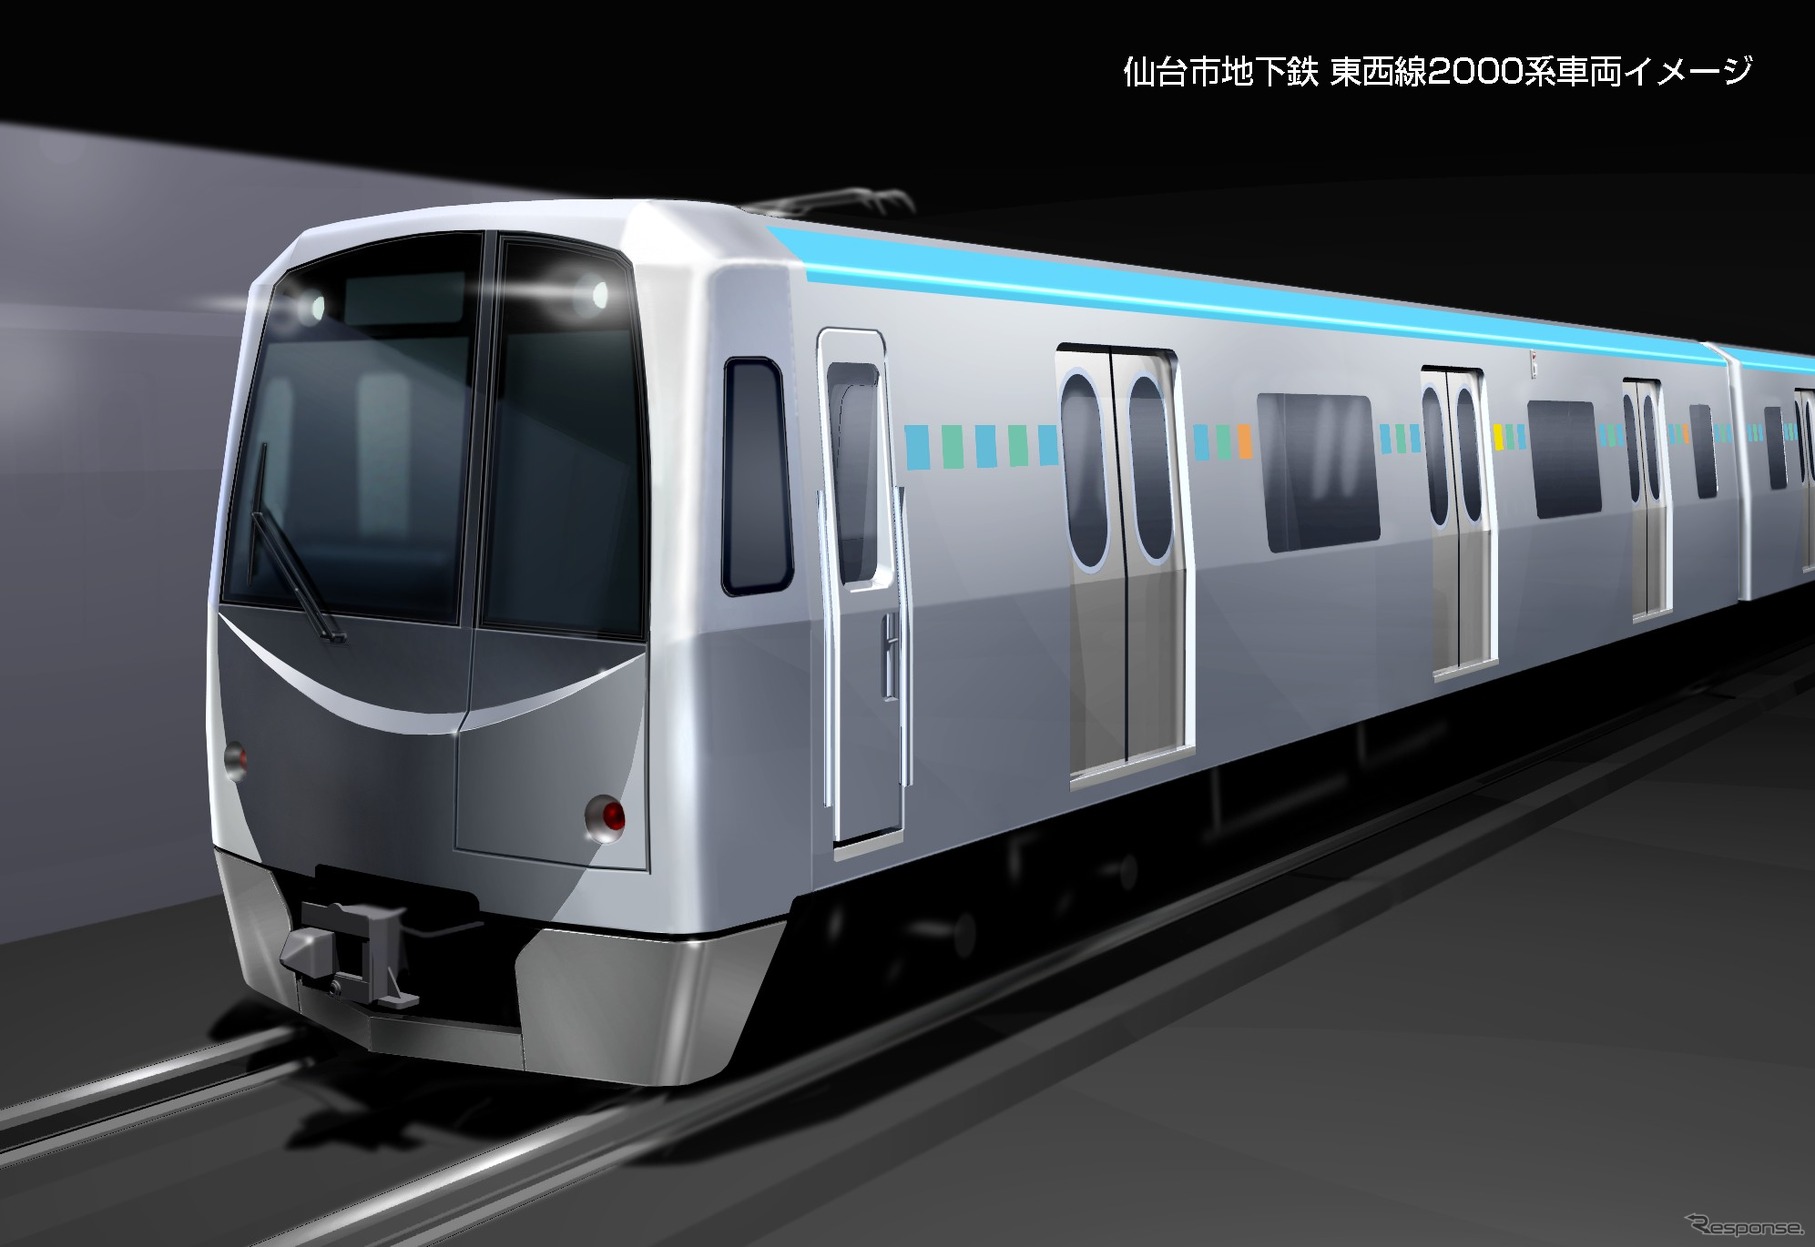 東西線に導入される予定の2000系。リニアモーター式の地下鉄車両となる。